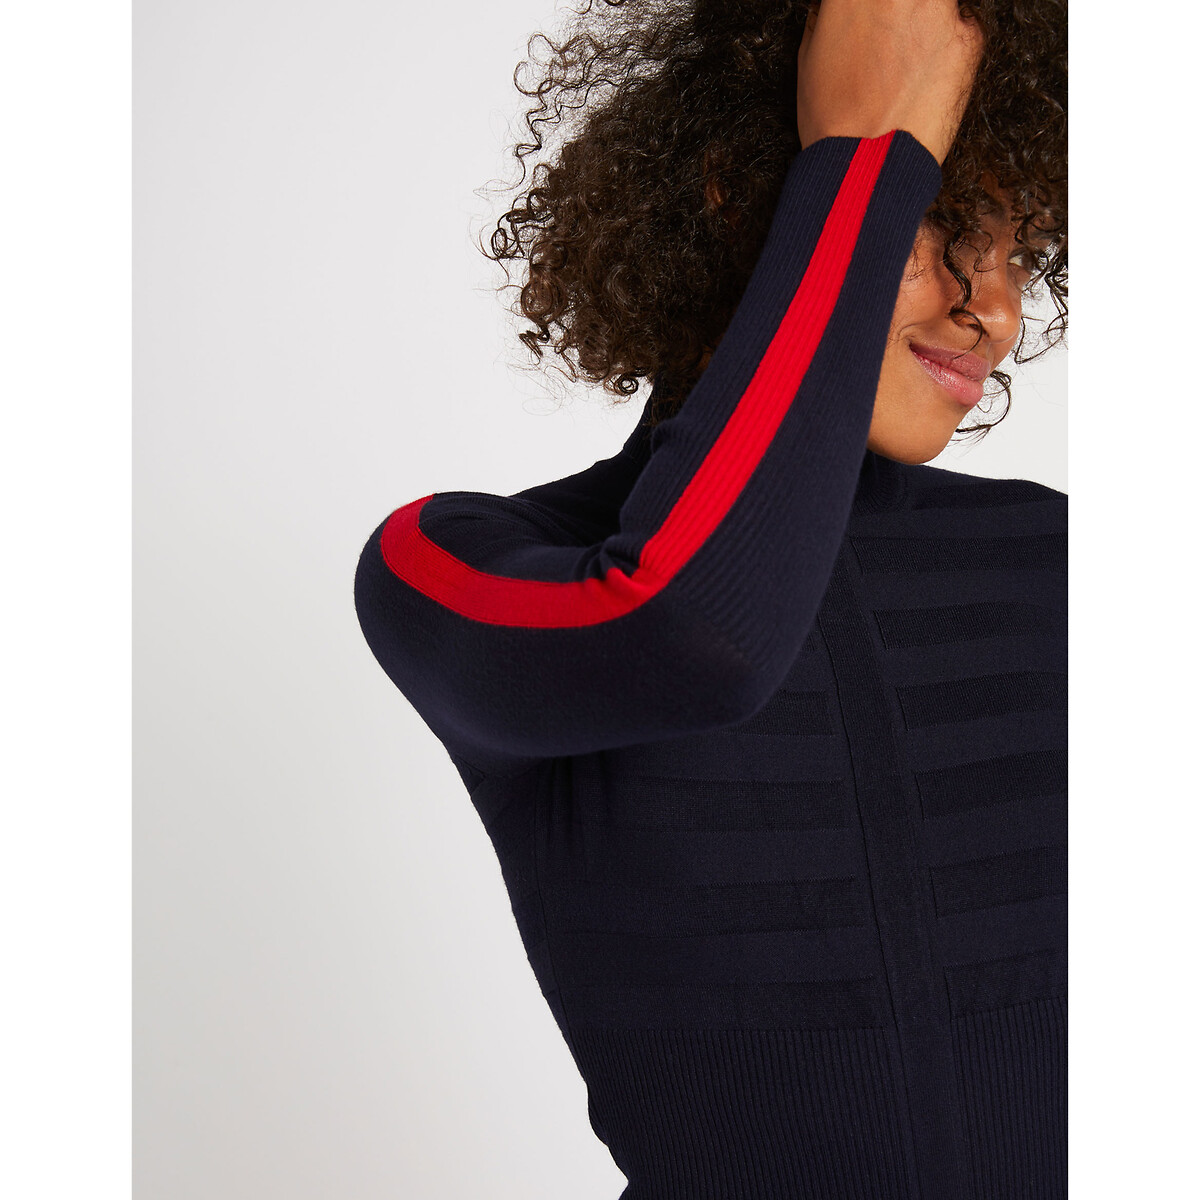 Fine Knit Turtleneck Jumper with Stripes